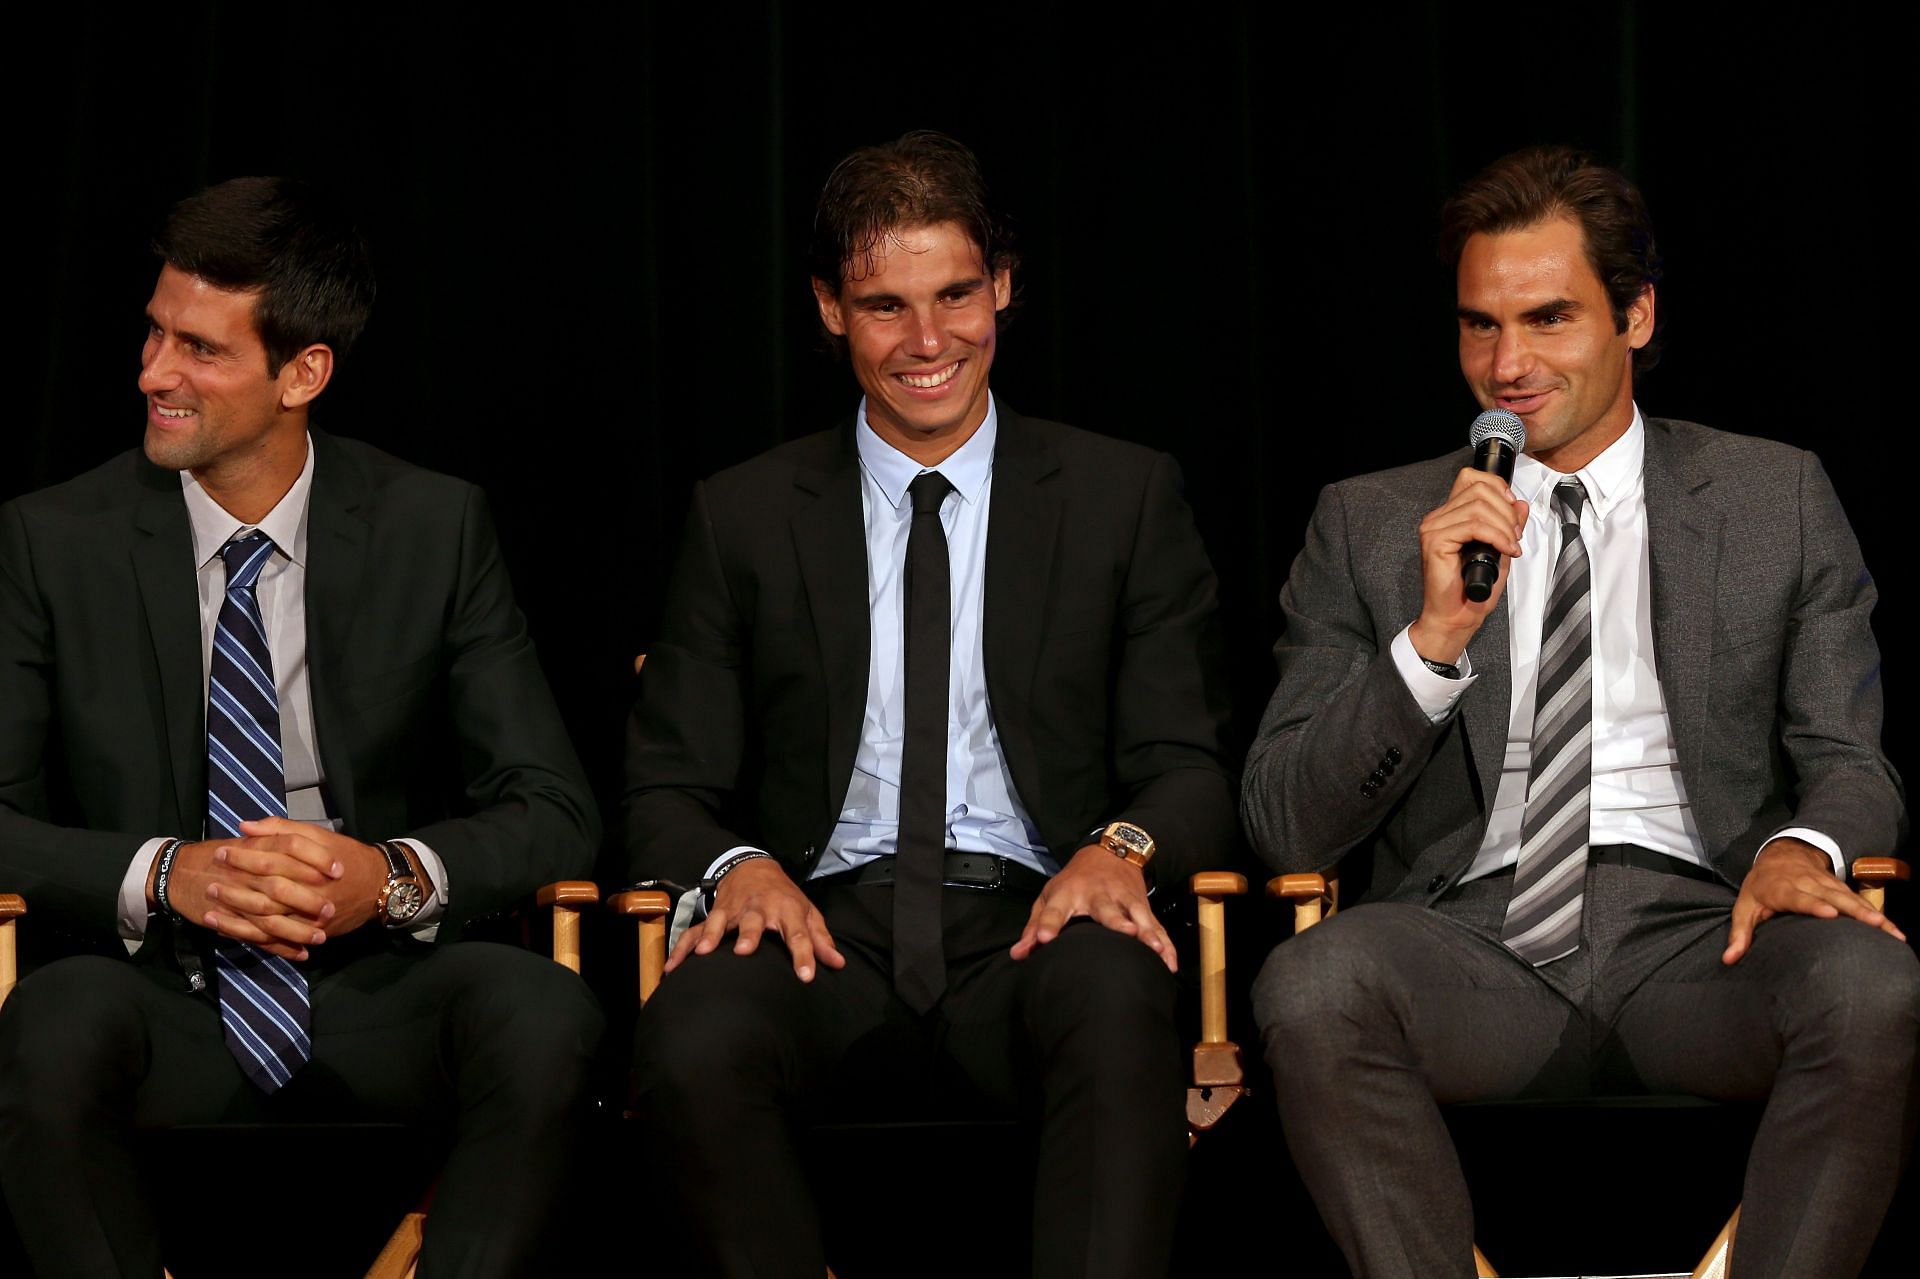 Roger Federer, Rafael Nadal and Novak Djokovic (from right to left)